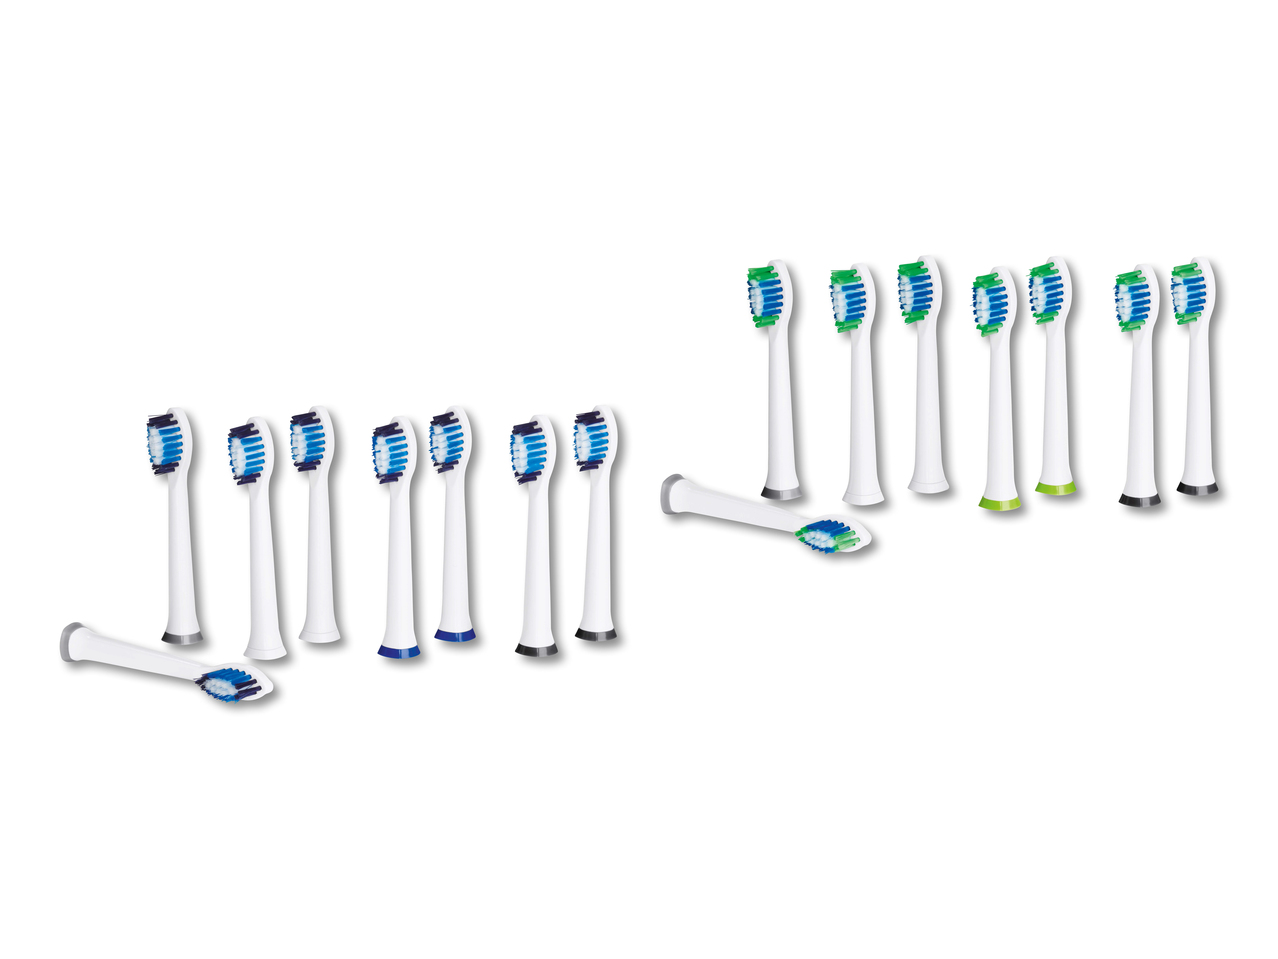 Brossettes de rechange pour brosse à dents à ultrasons, lot de 8